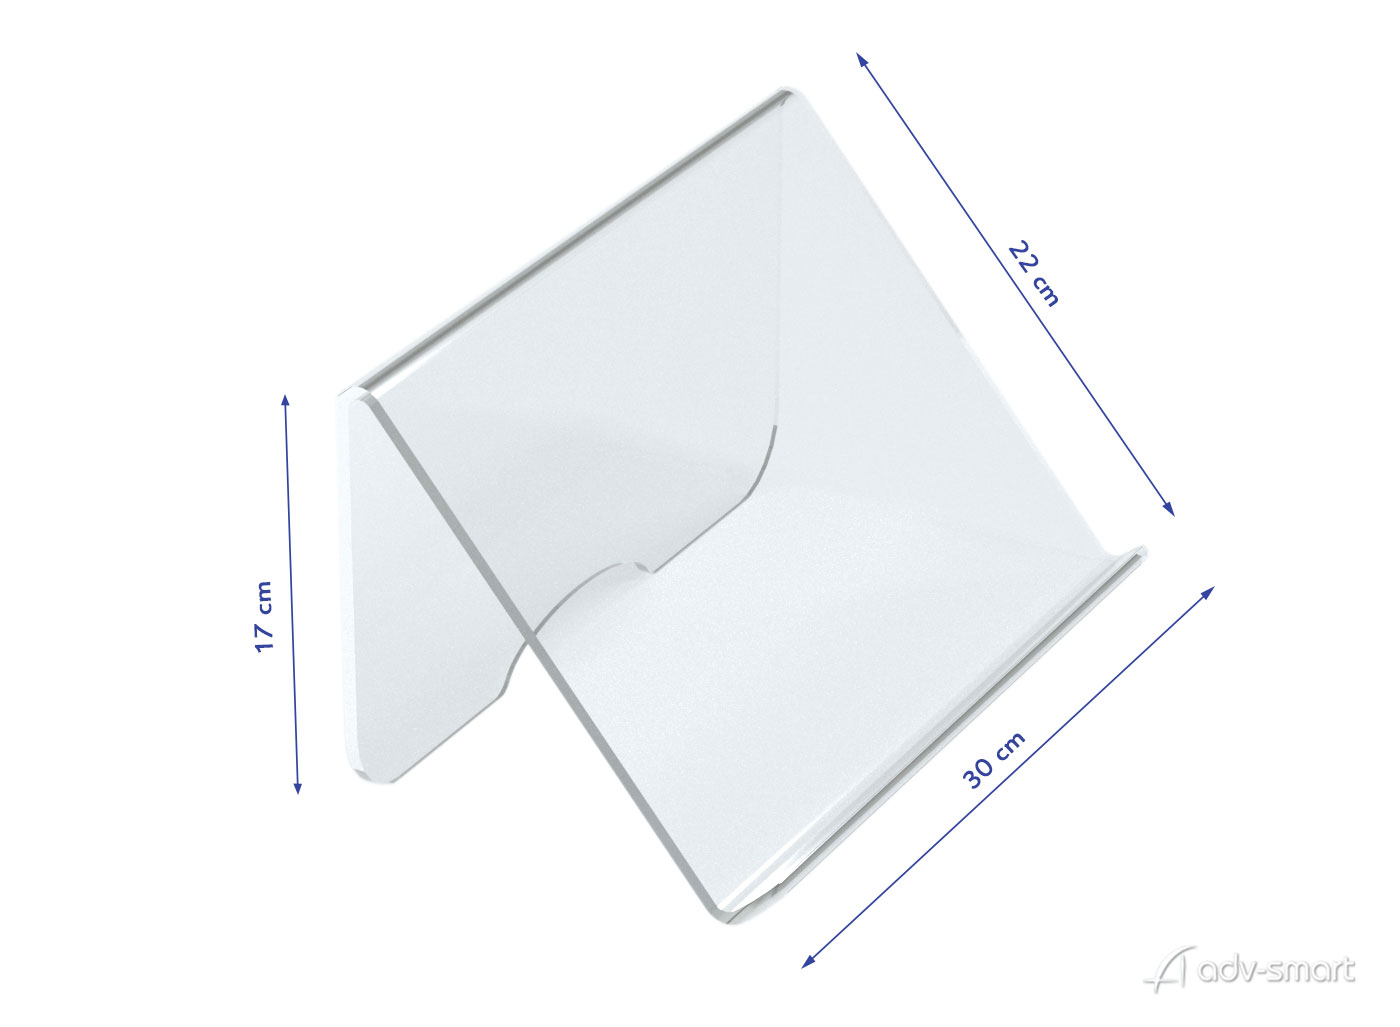 Supporto Porta Tablet e Laptop in Plexiglas - ADV-smart